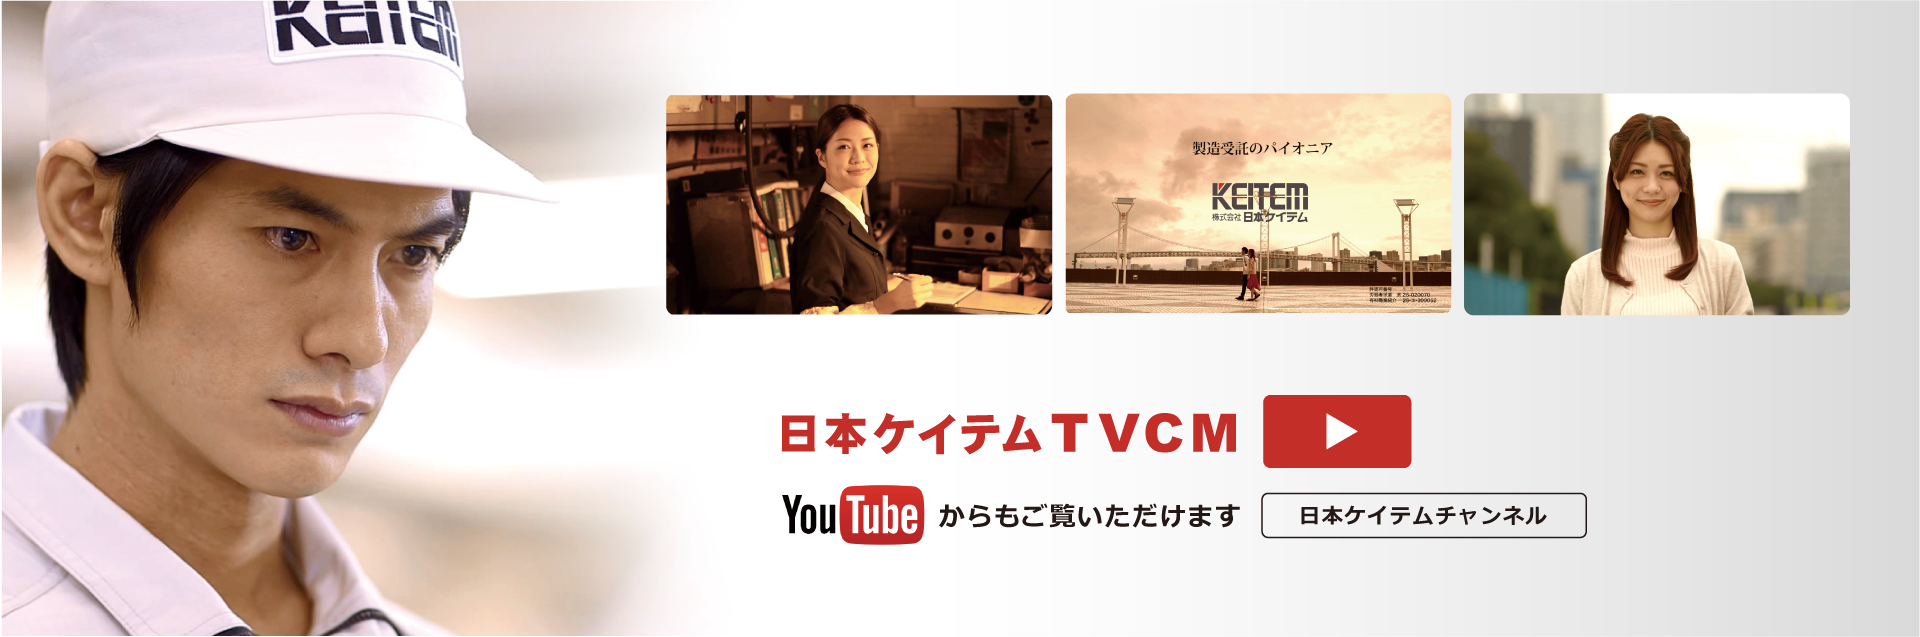 日本ケイテム テレビCMを展開中